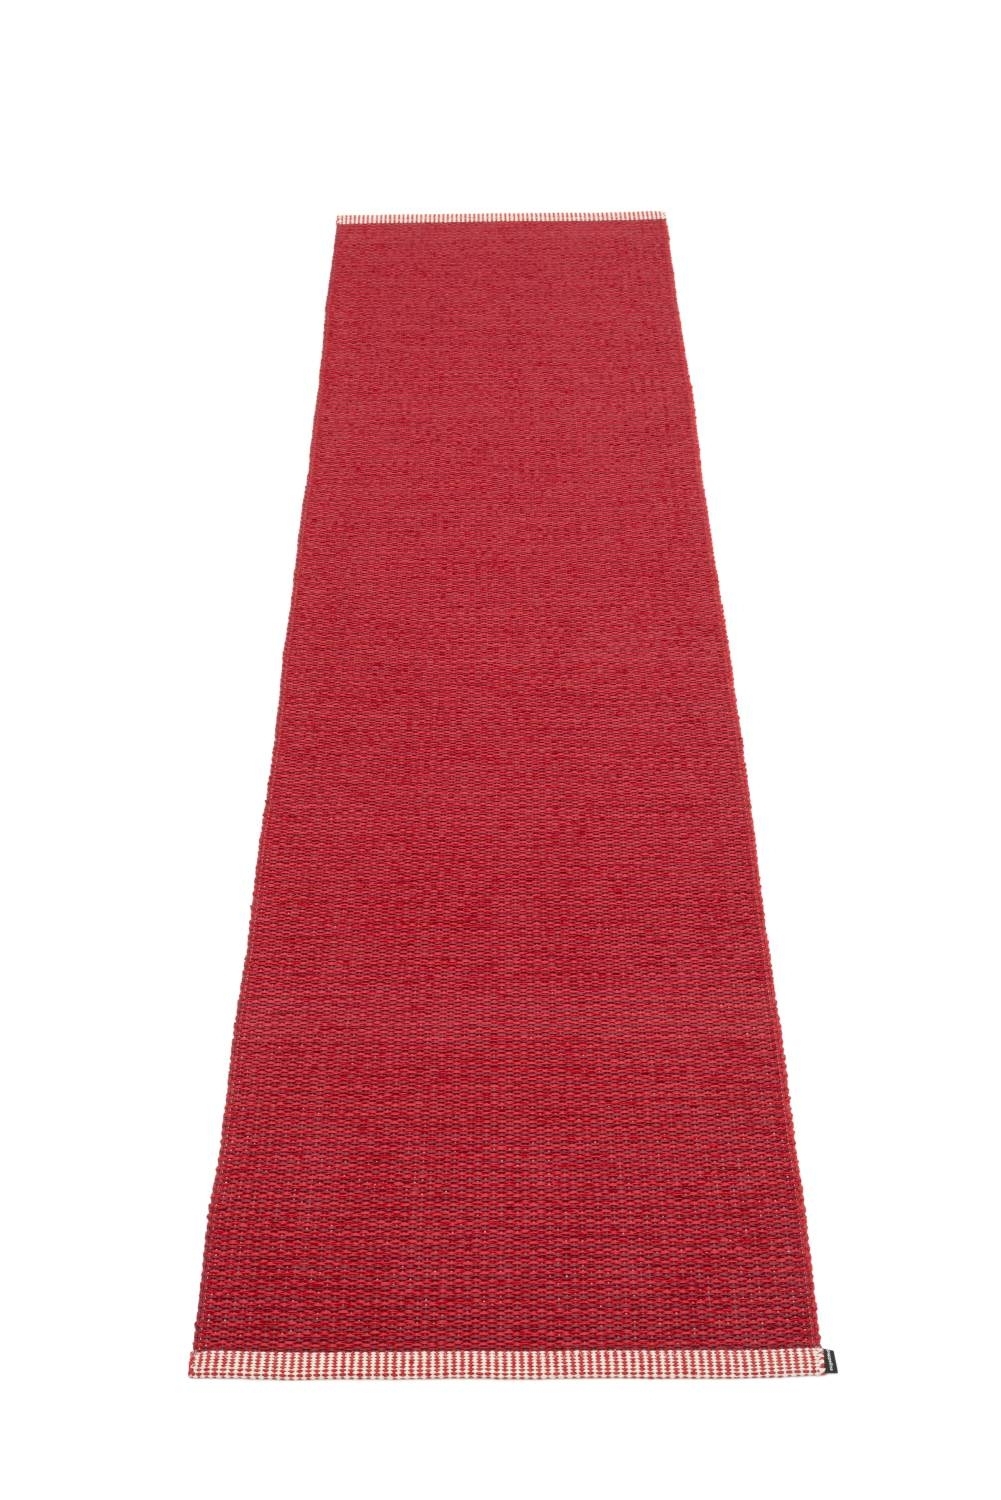 Mono Teppich Rot 60 x 250 cm